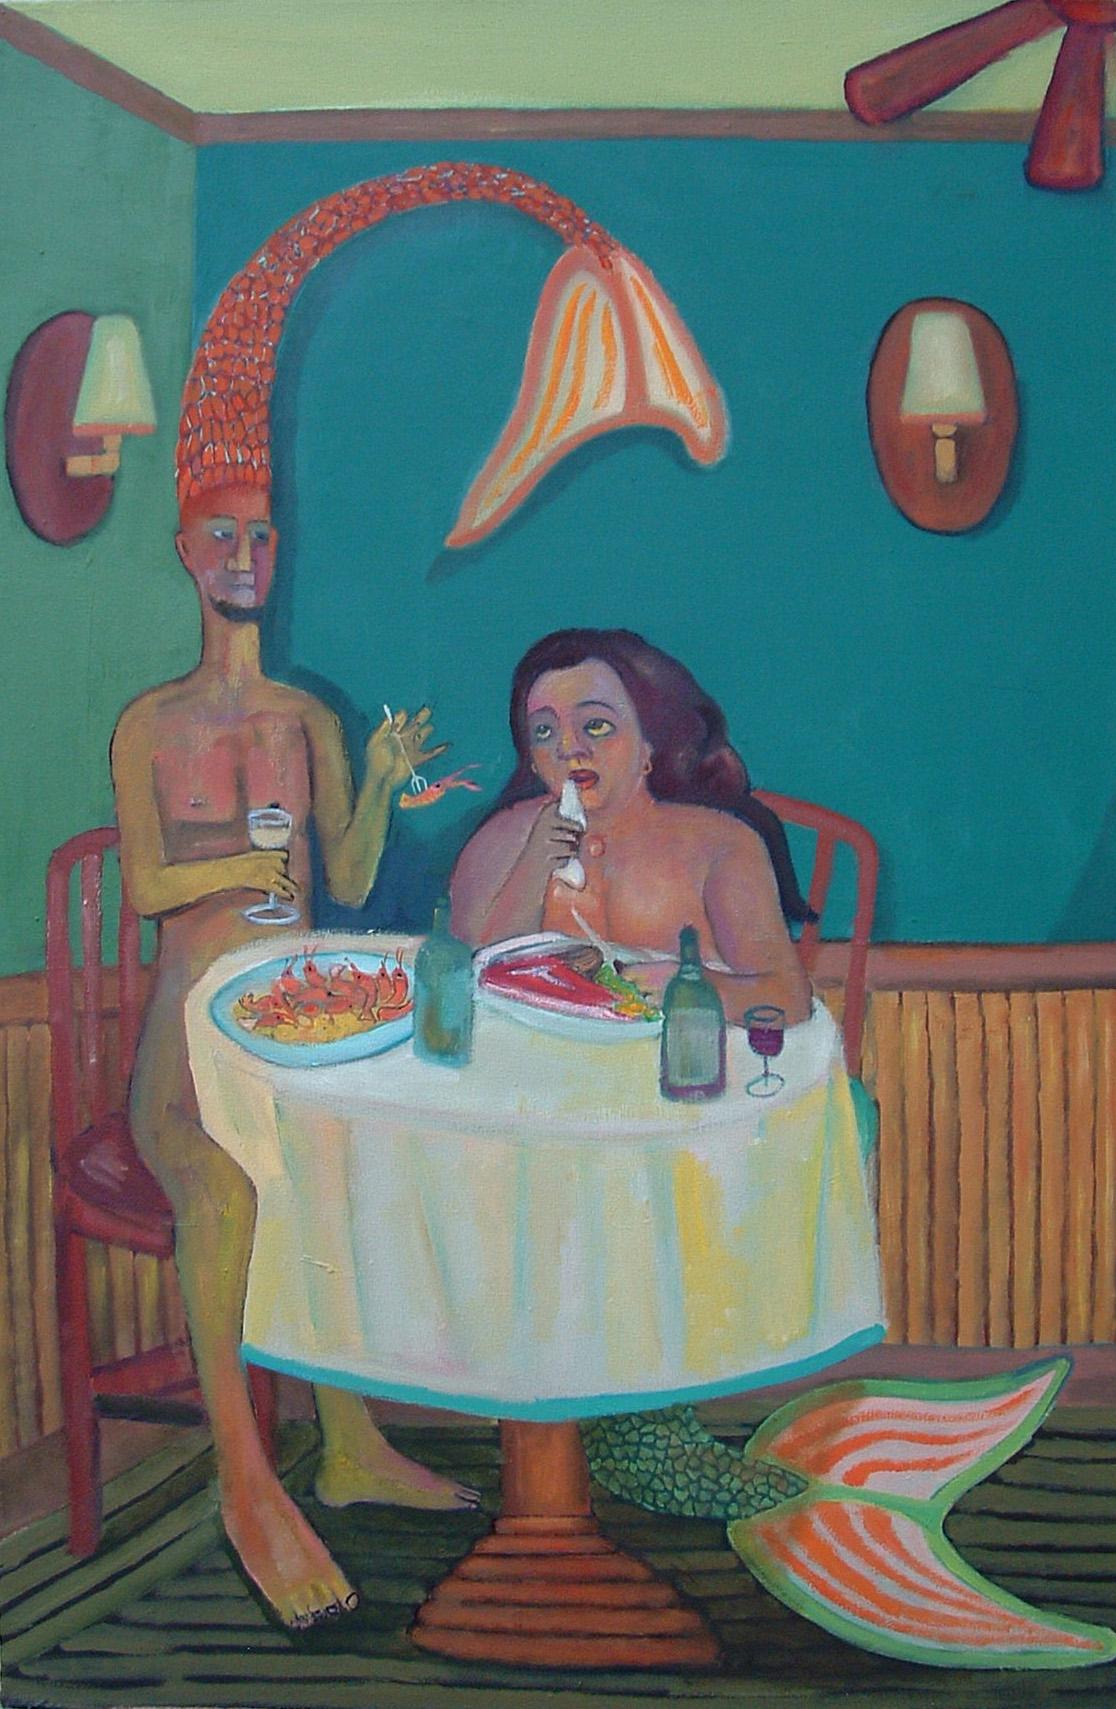 Stephen Basso Figurative Painting - Surf N' Turf  mermaid mythic figures interior food romantic undertones